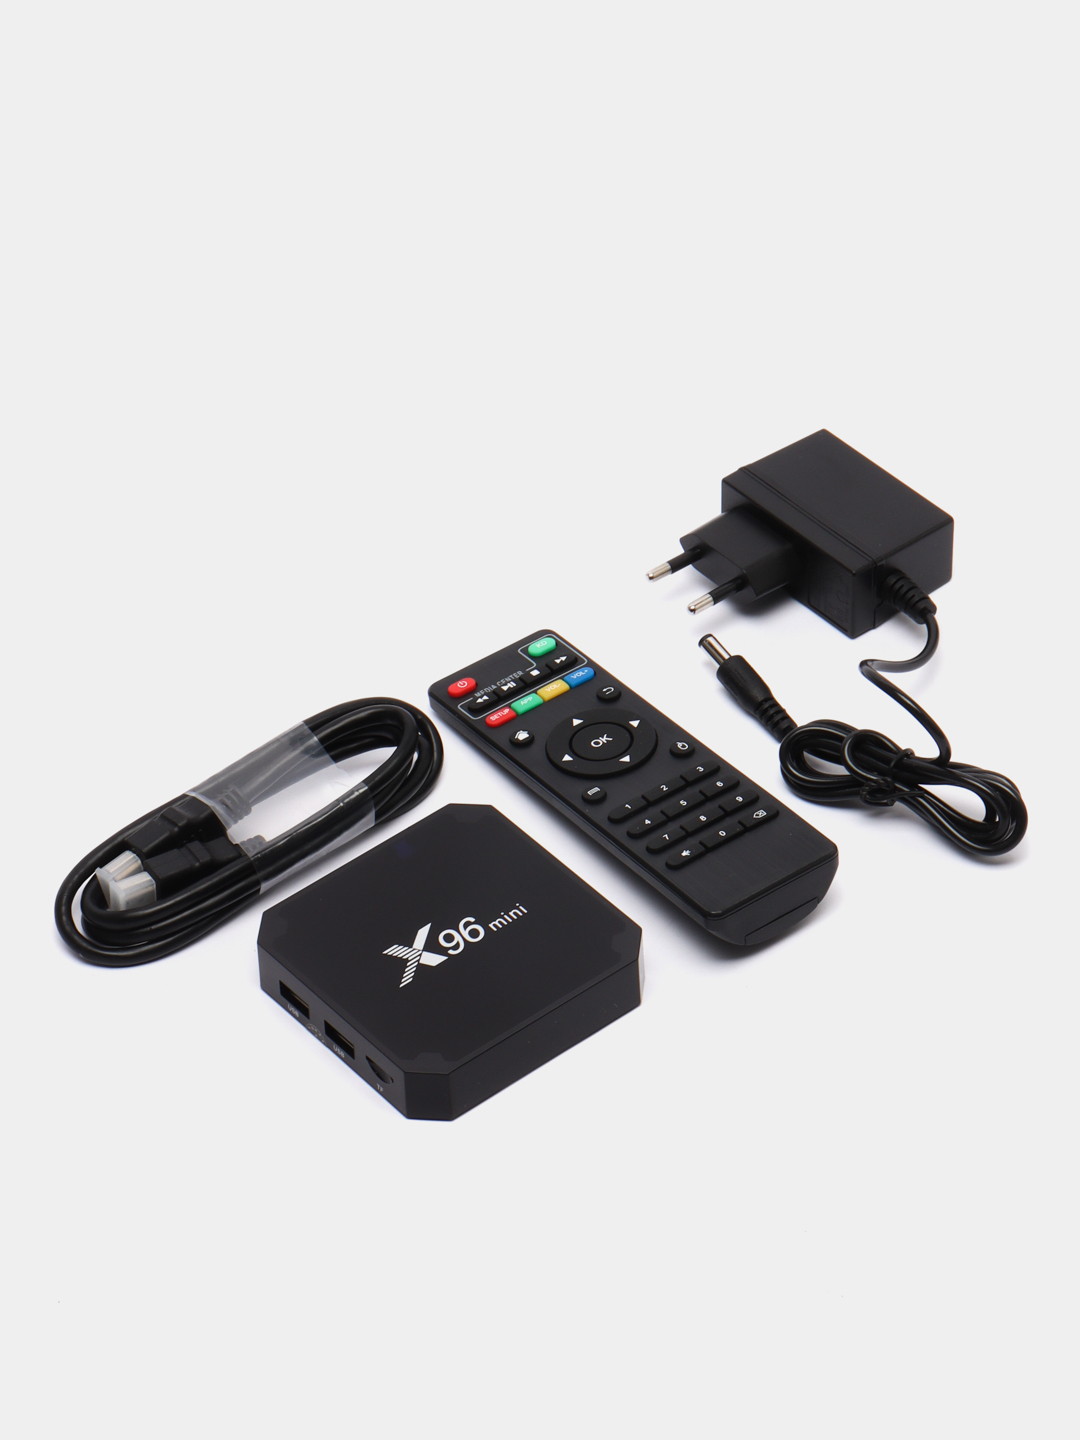 X96 mini 2/16 андроид/android Смарт ТВ/Smart TV приставка х96 мини купить по цене 4999 ₽ в интернет-магазине KazanExpress